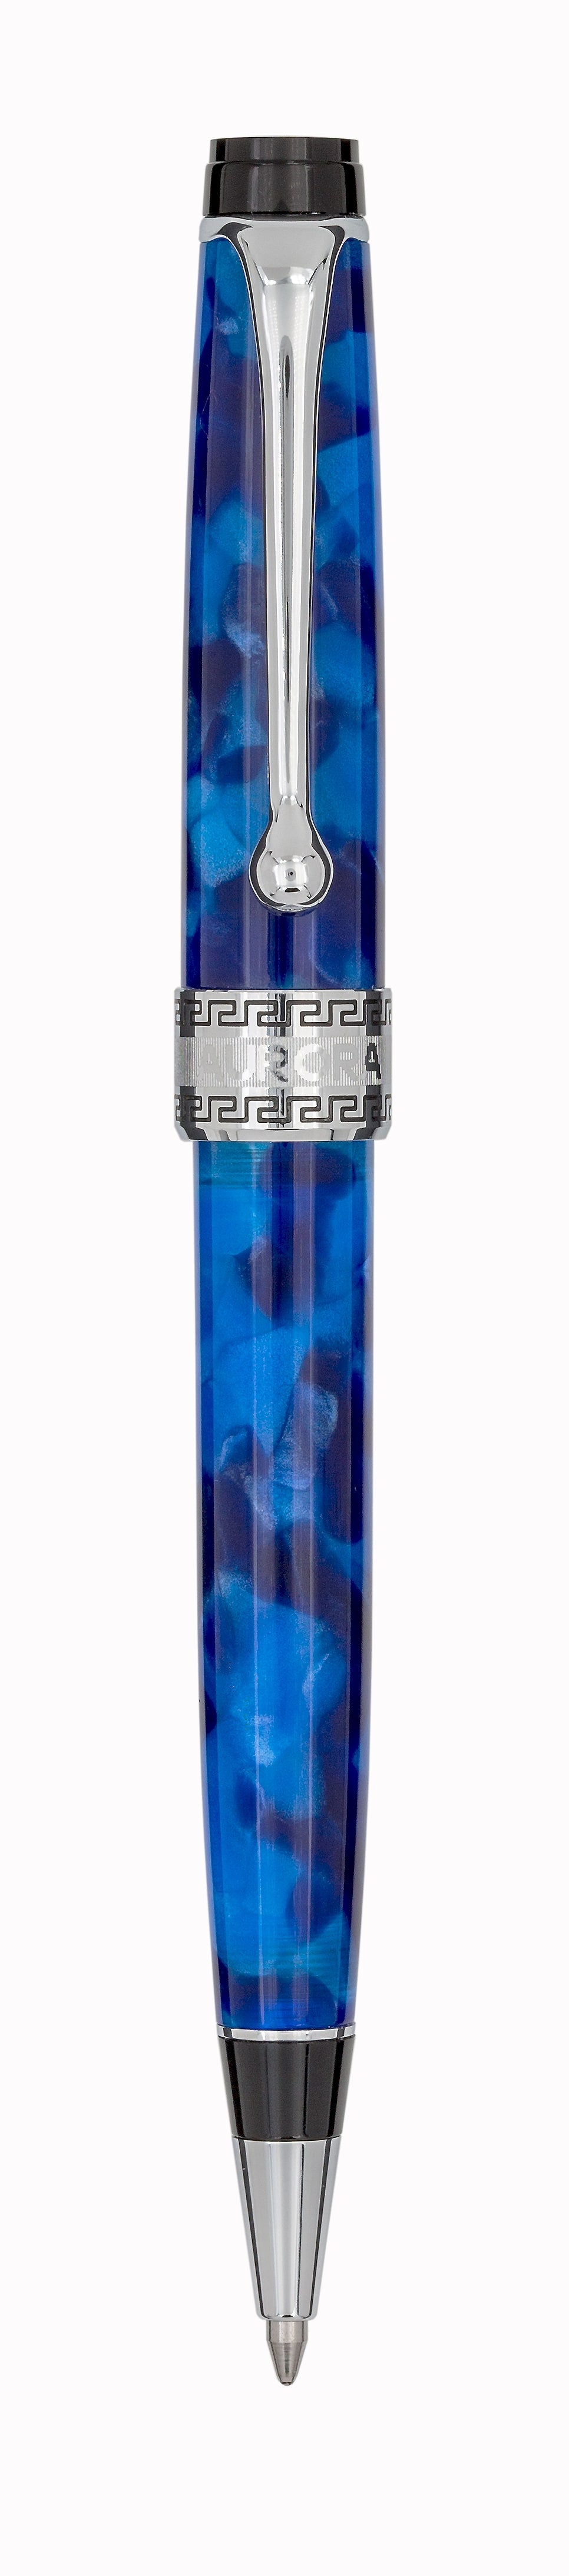 Aurora Optima Blue with Chrome Trims Ballpoint Pen